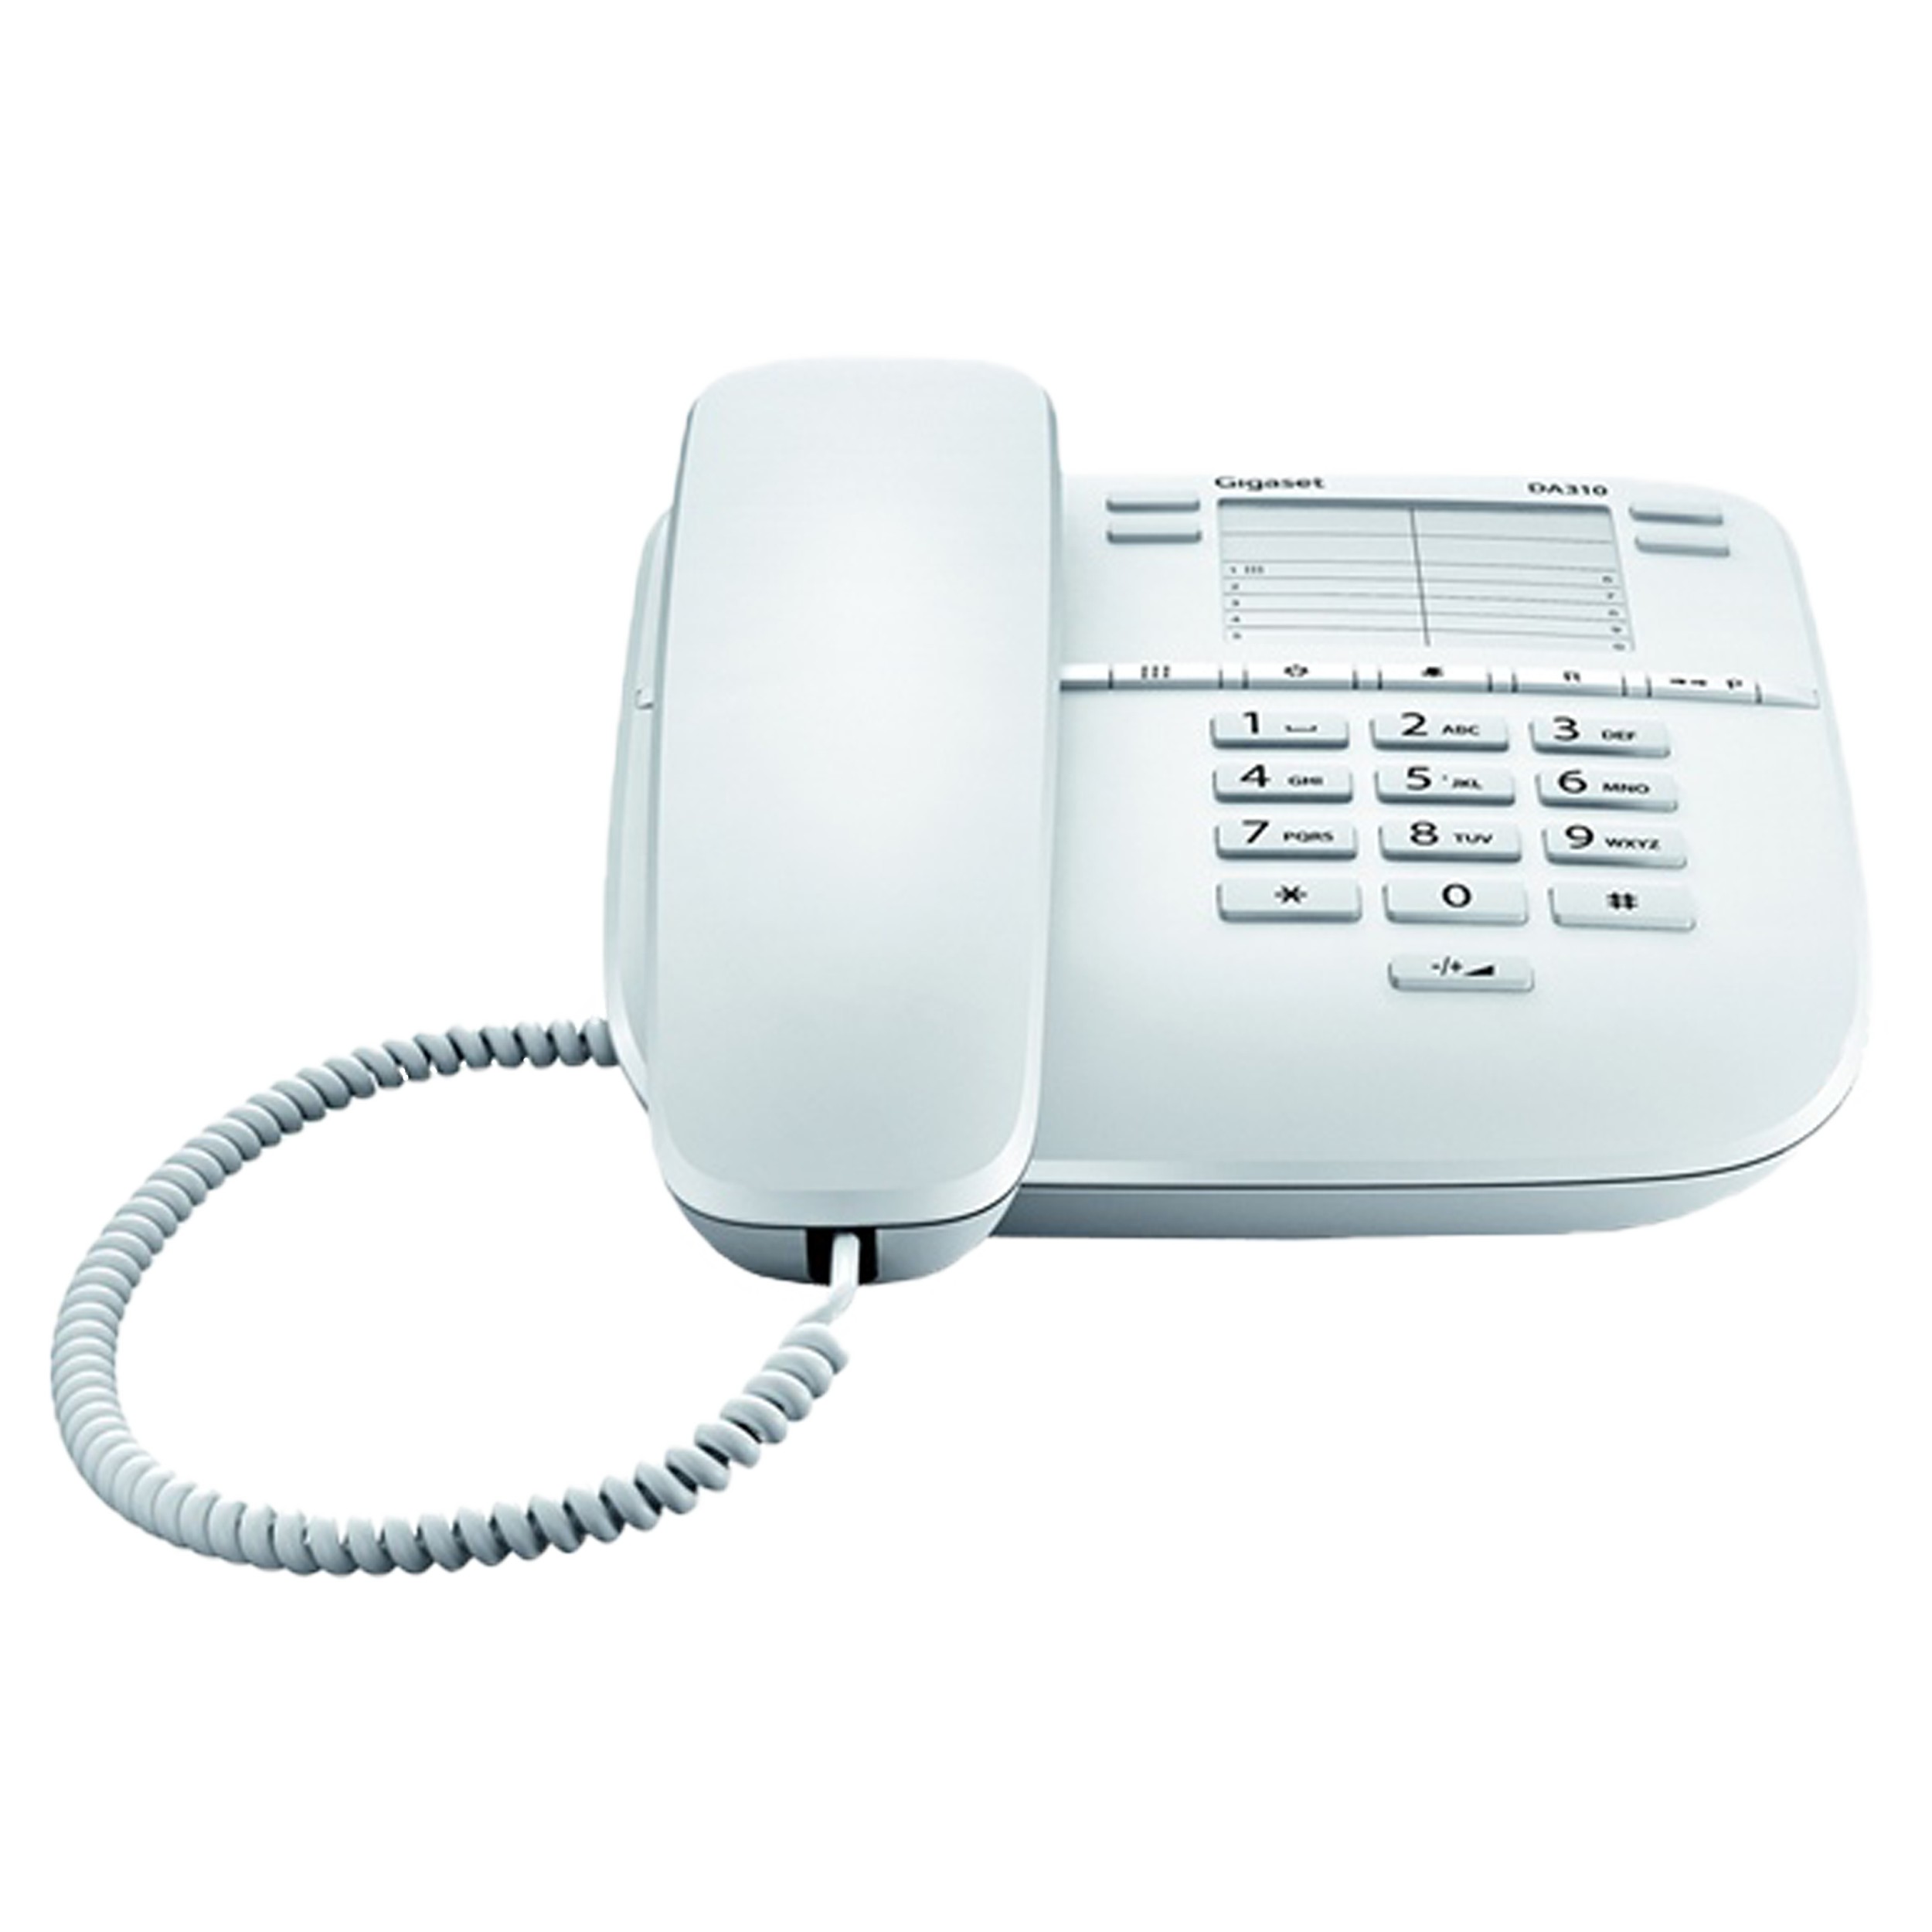 Analoges Telefon mit 4 Direktwahltasten für One-Touch-Verbindung, weiß